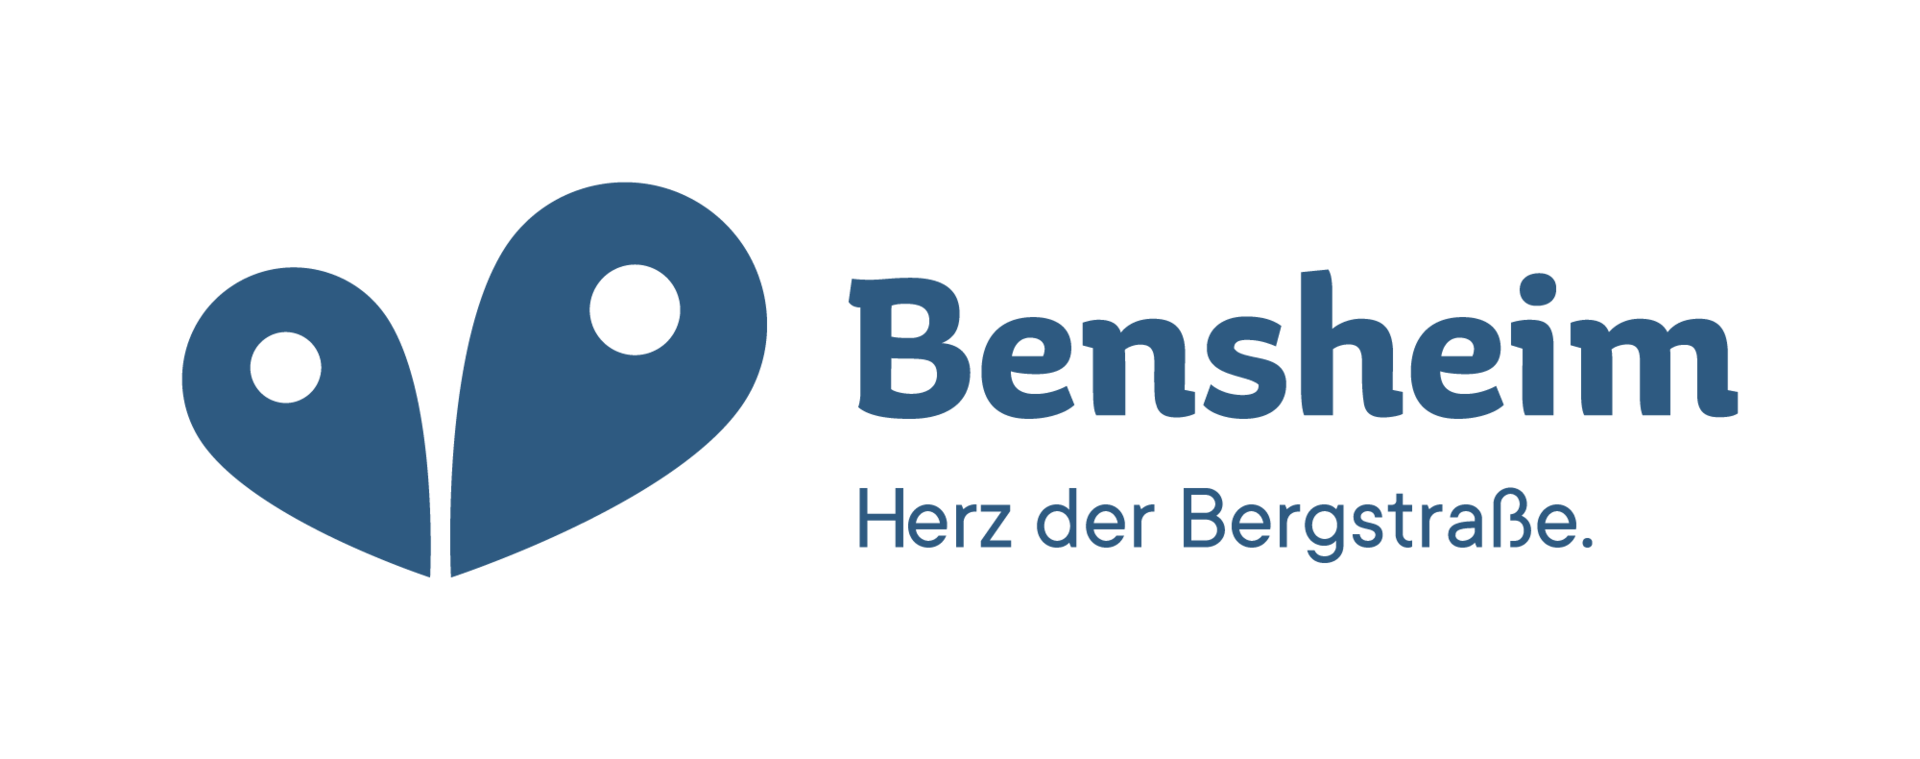 bensheim